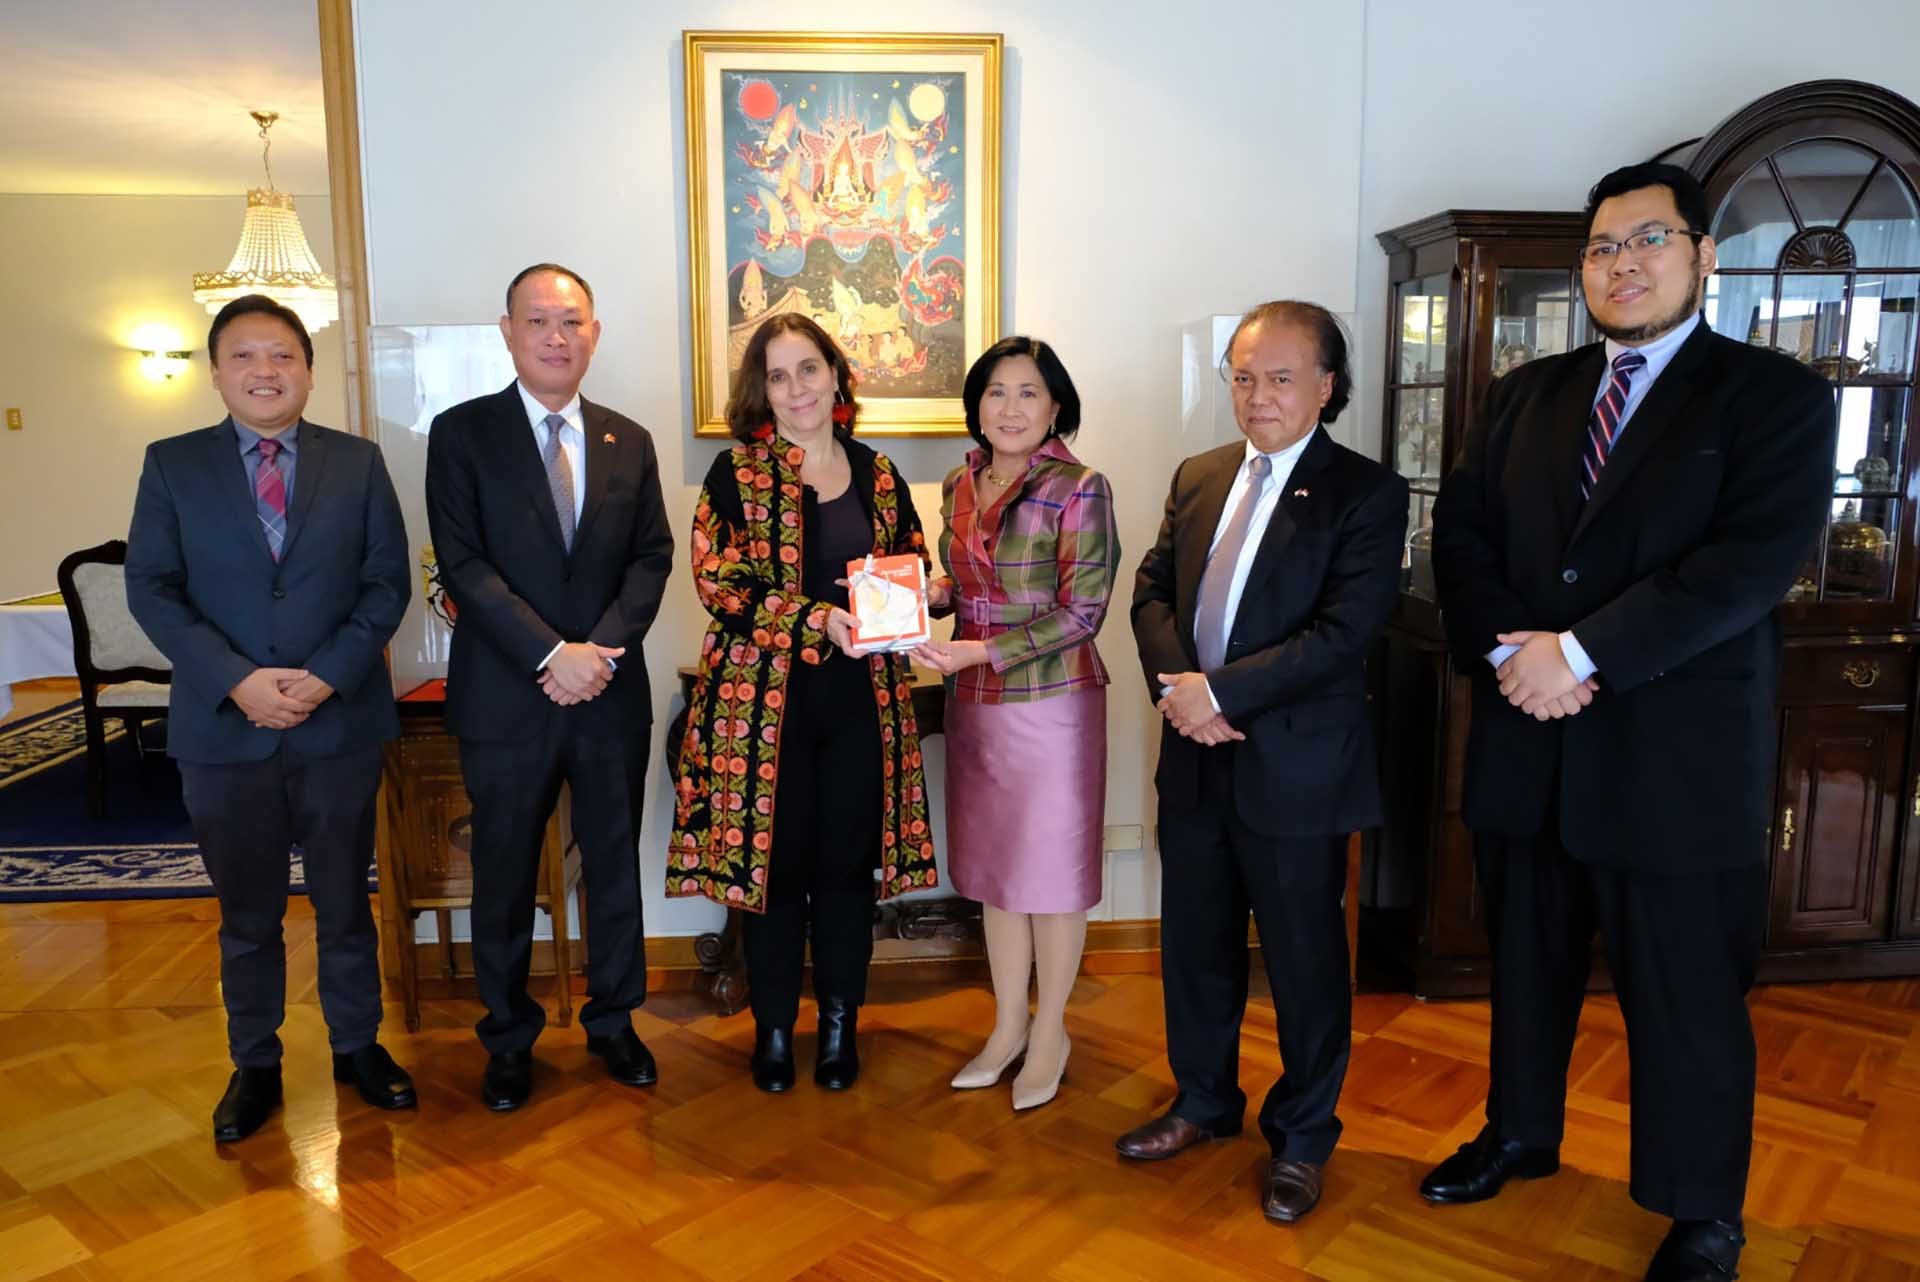 Ủy ban ASEAN tại Santiago làm việc với Bộ trưởng Ngoại giao Chile Antonia Urrejola.